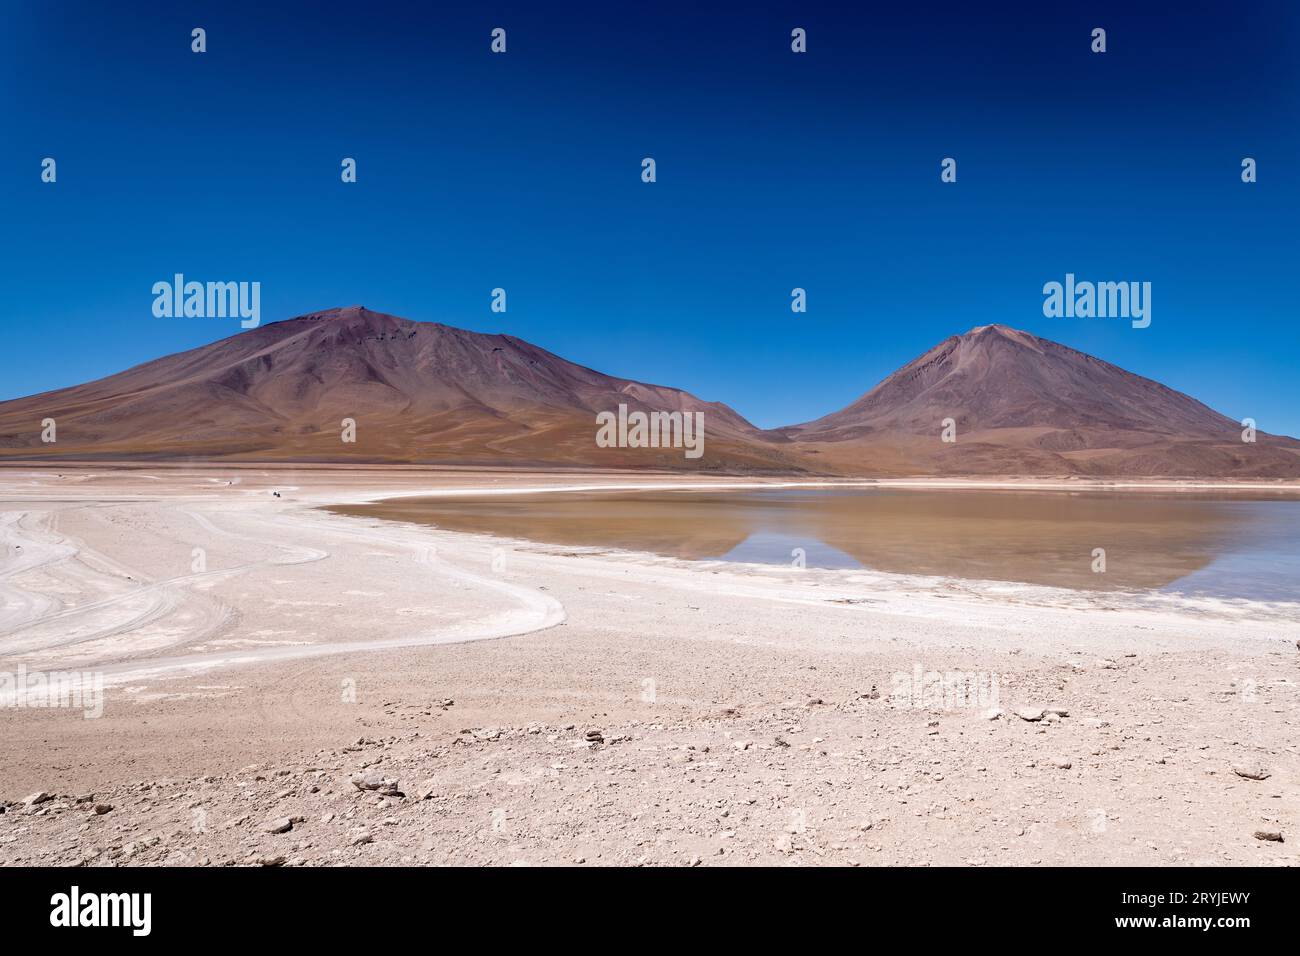 Paesaggio desertico dell'altiplano boliviano Foto Stock